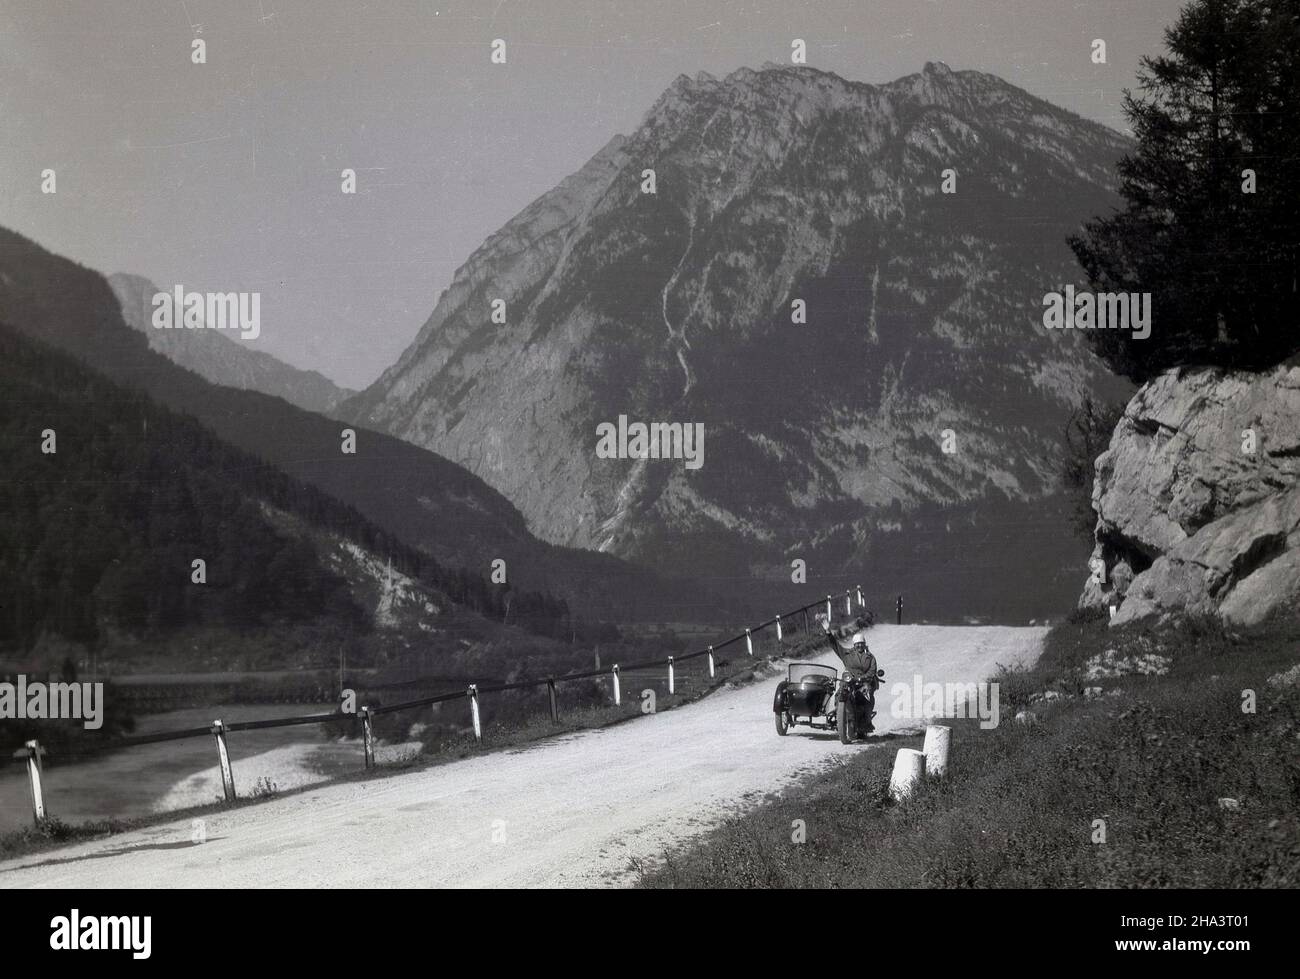 1930s, historique, sur une route de montagne poussiéreuse, une dame assise sur une voiture scoute indienne avec un side-car, en signe de route à la personne au loin prenant sa photo, Alpes, France. Banque D'Images